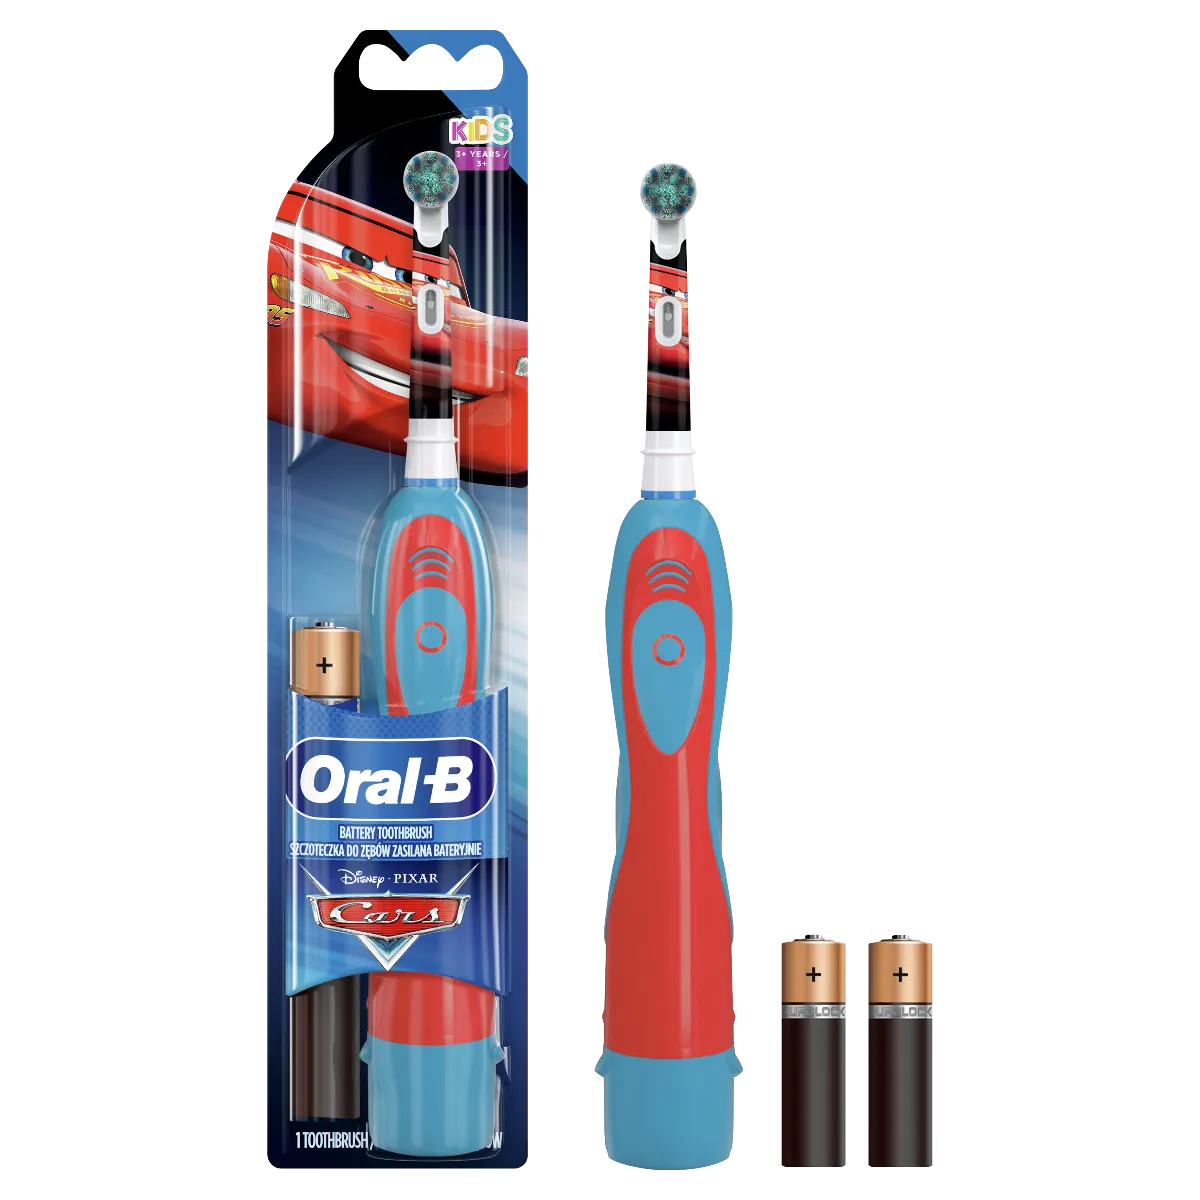 Oral B Batériová kefka Cars & Princess "Poškodený obal" 1×1 ks, detská zubná kefka, produkt s poškodeným obalom